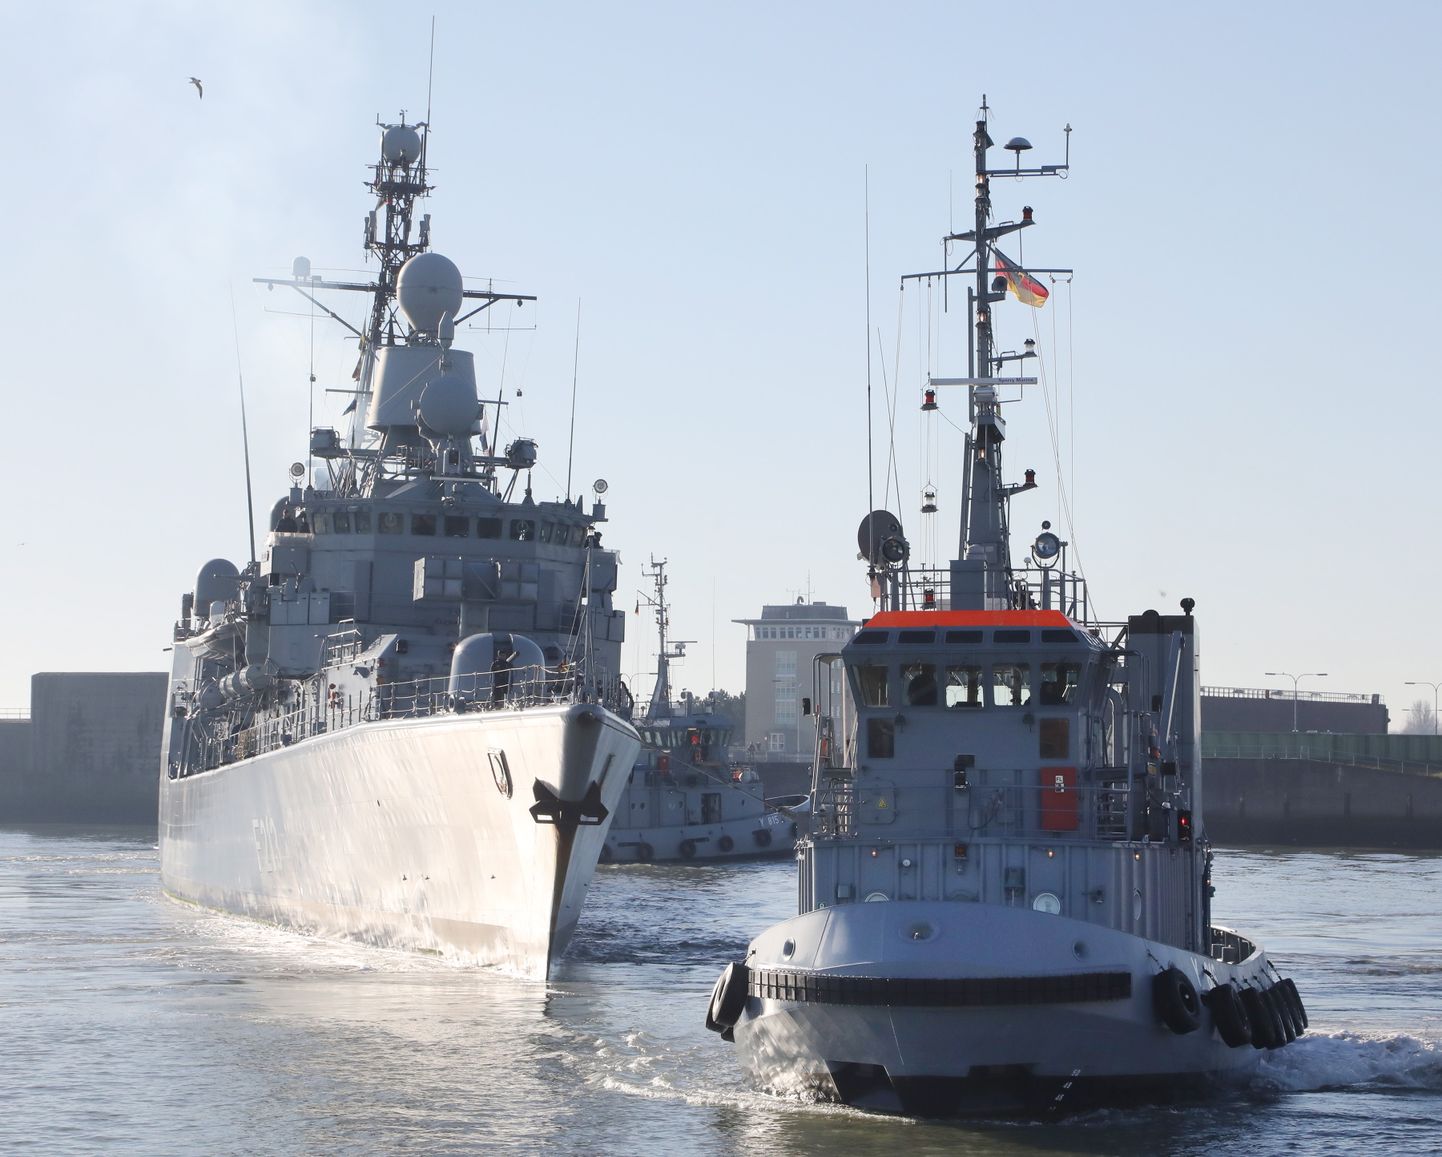 Saksa fregatt Augsburg jõudmas kodusadamasse 2019. aasta veebruaris pärast osalemist Vahemerel operatsioonis Sophia.